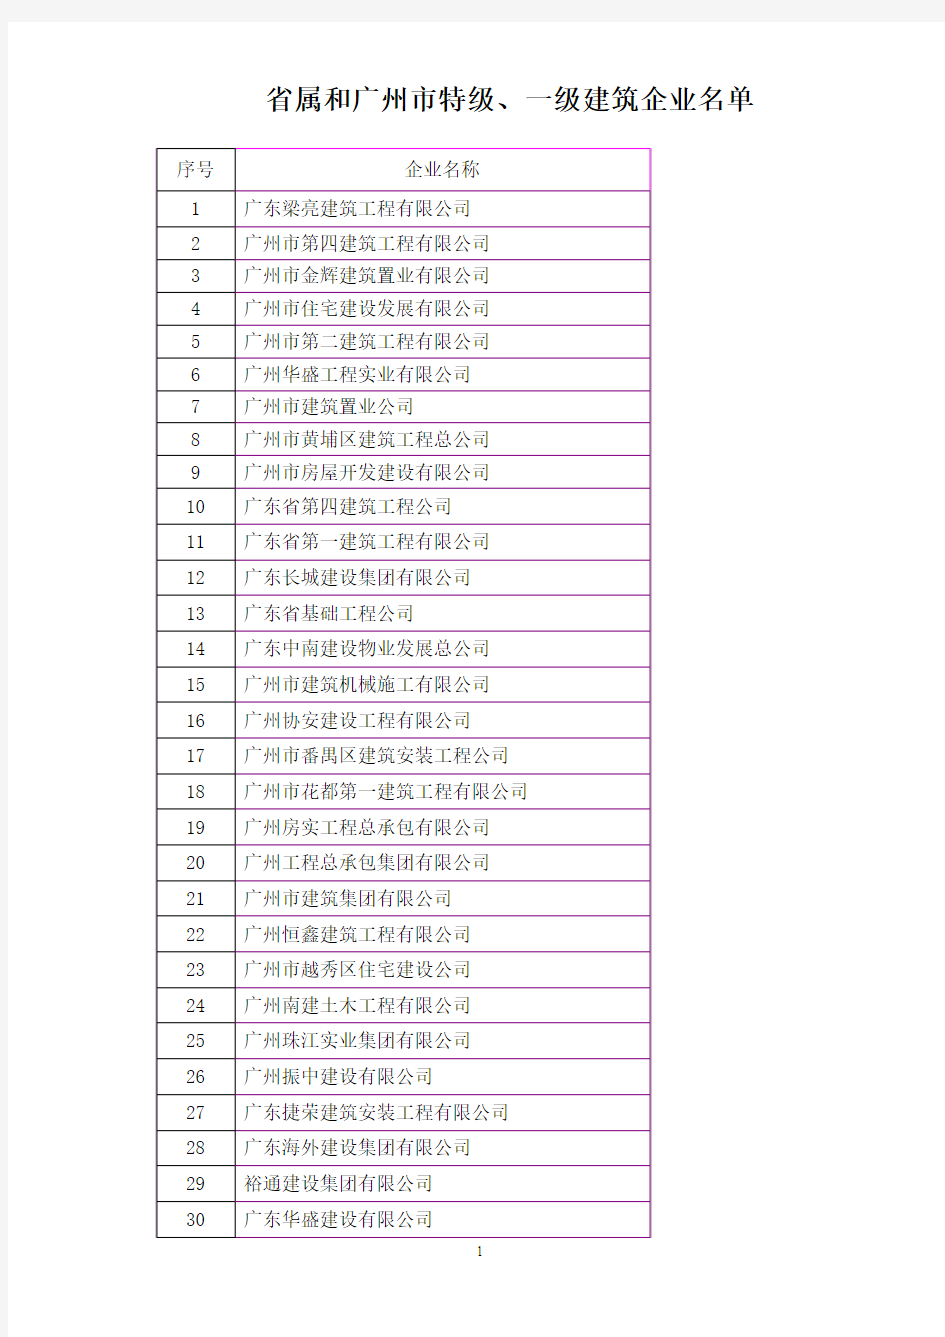 省属和广州市特级,一级建筑企业名单